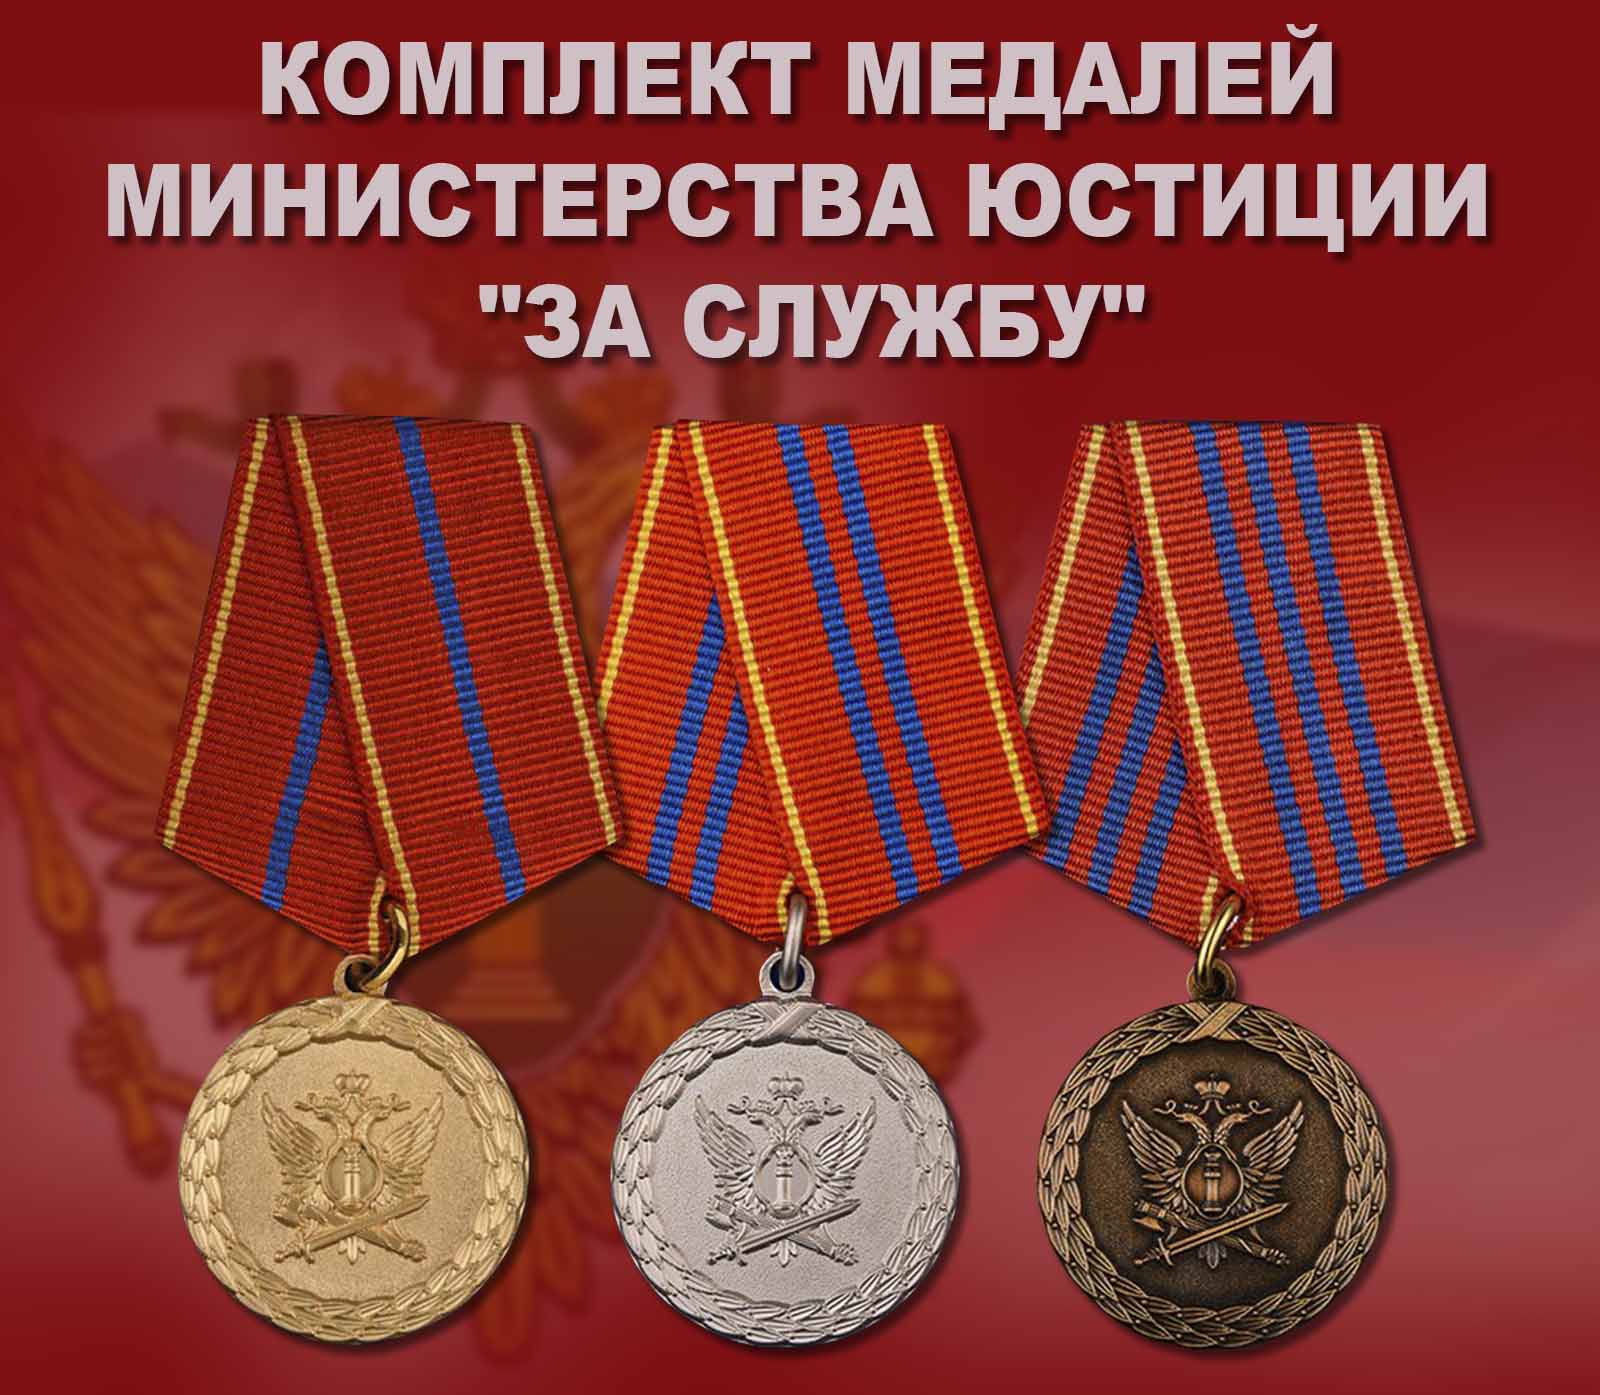 Купить комплект медалей Министерства юстиции "За службу"